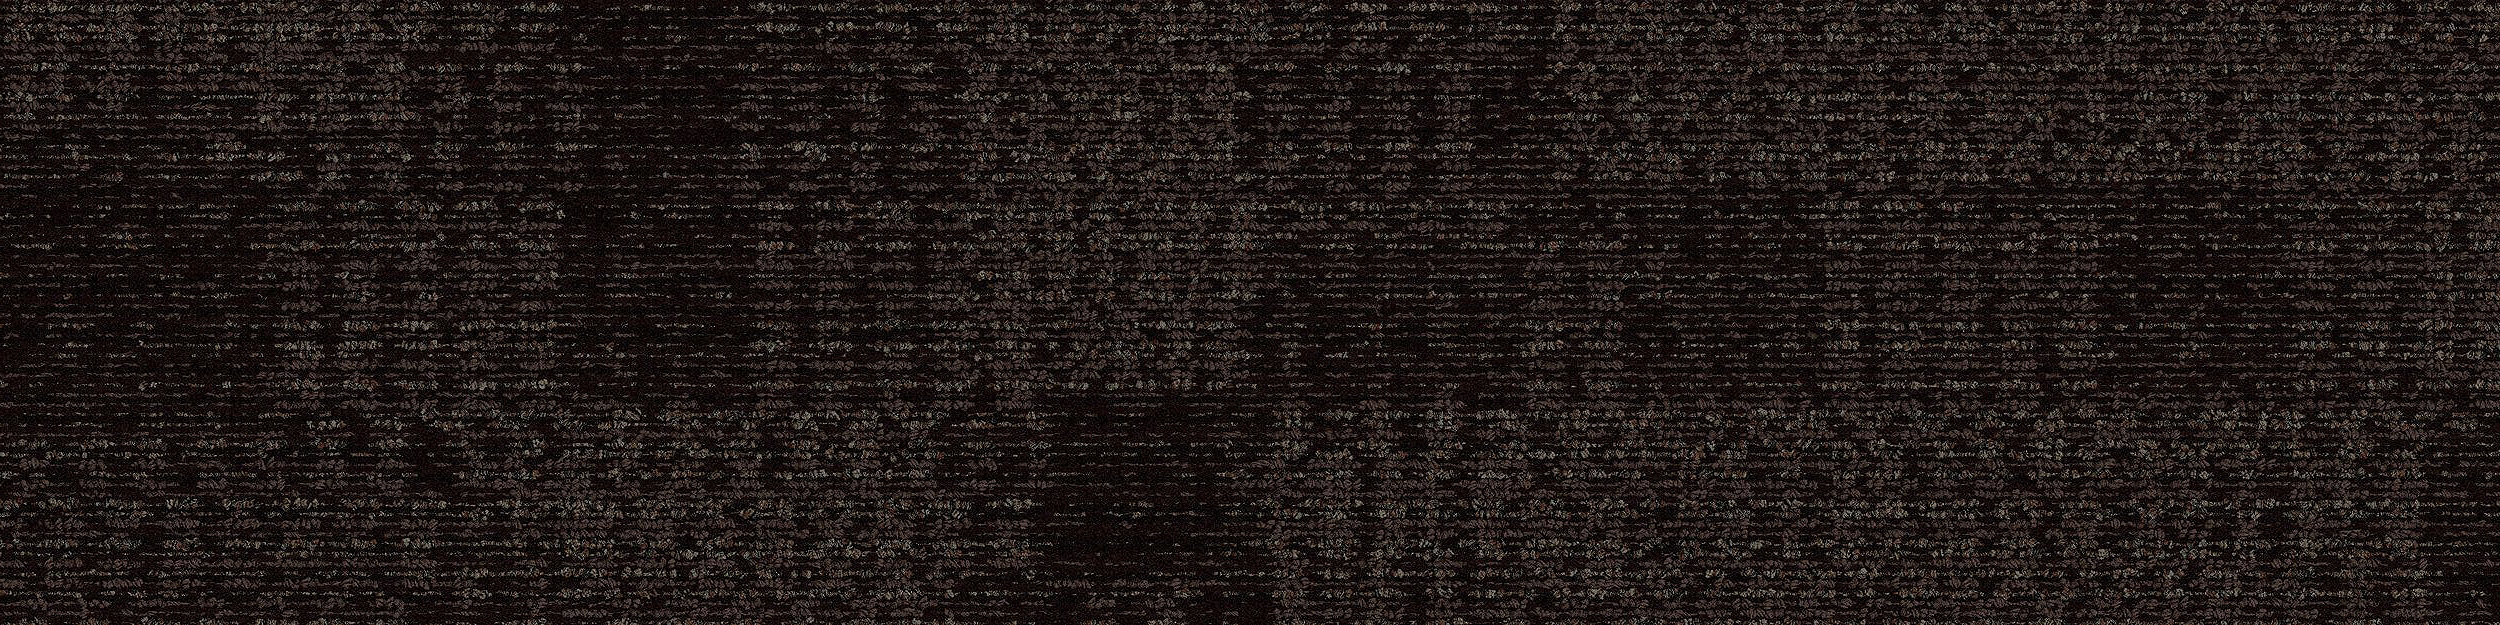 RMS 705 Carpet Tile In Hot Cocoa imagen número 4